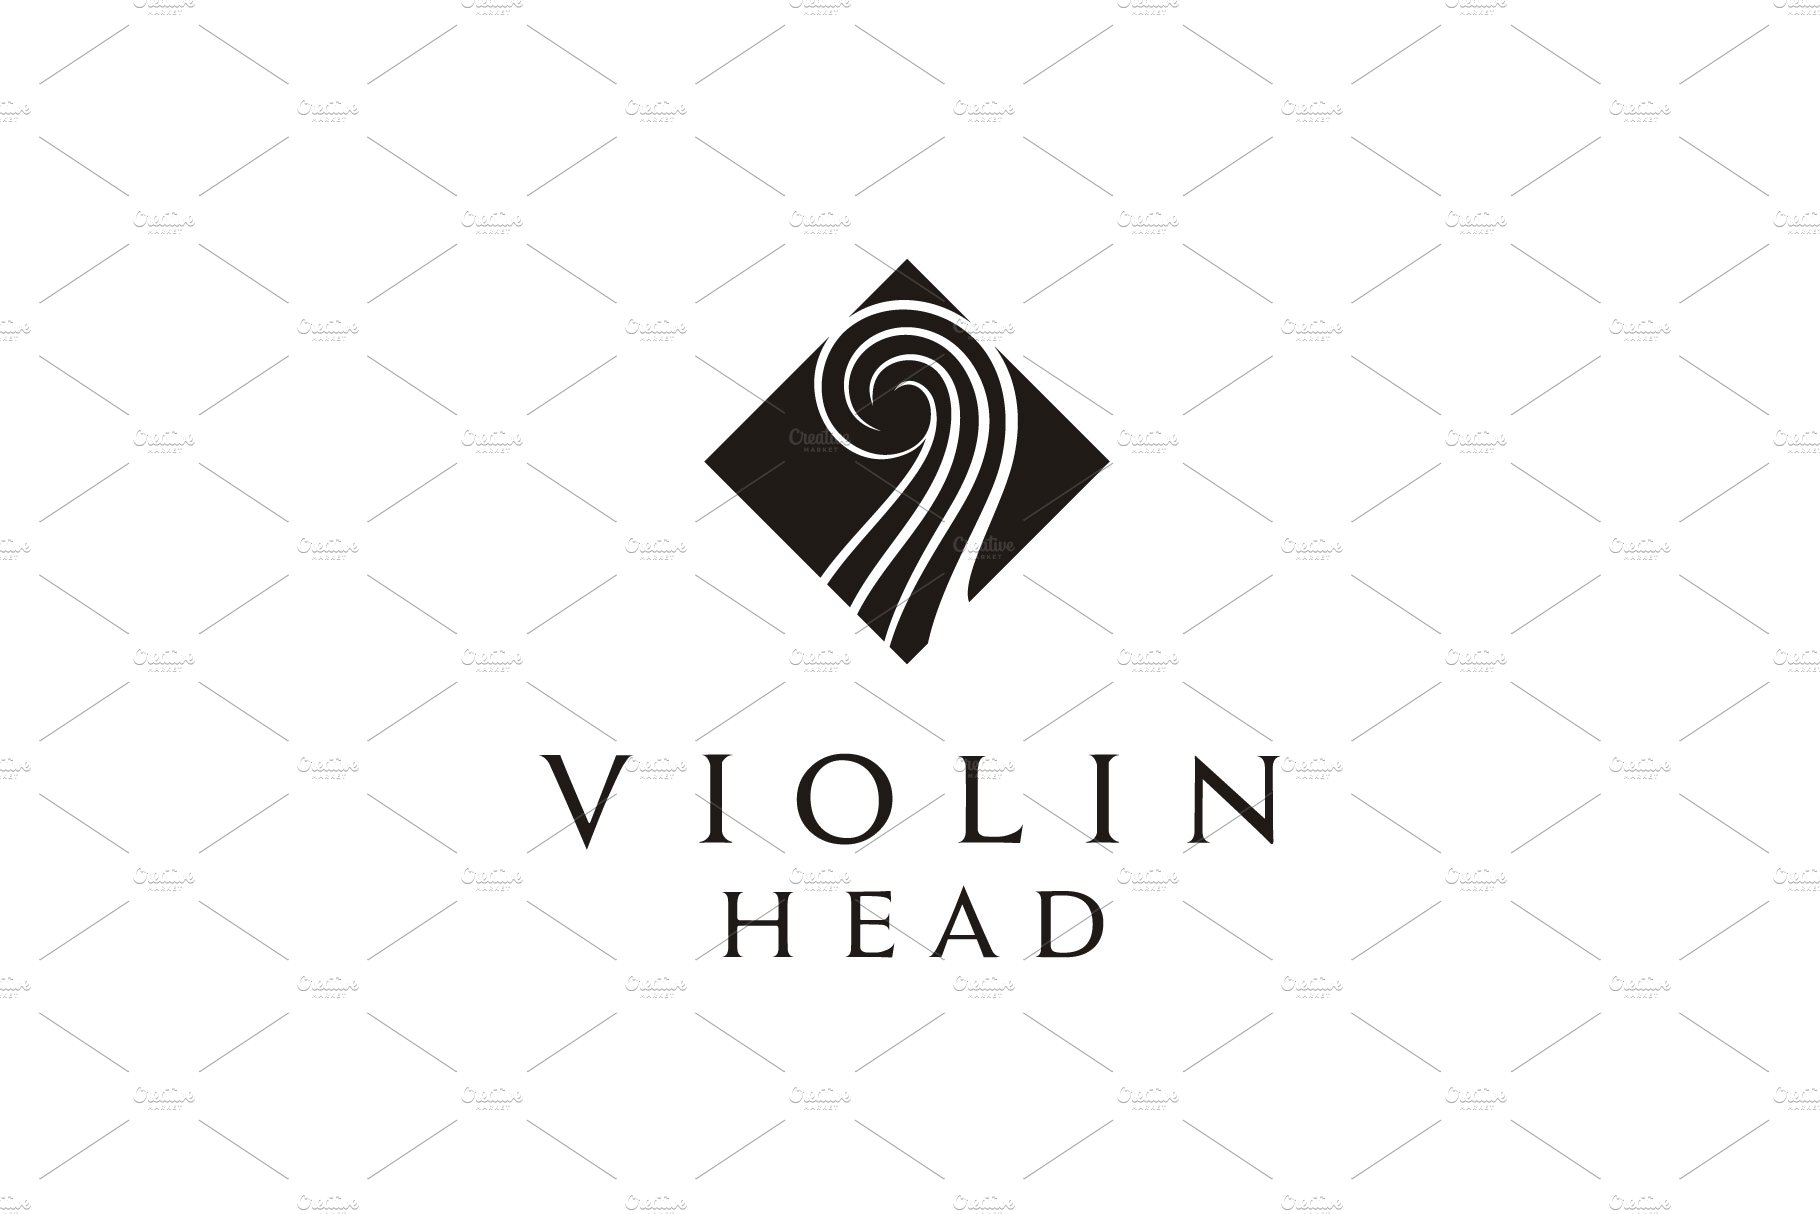 Violin or Cello Head Music logo cover image.